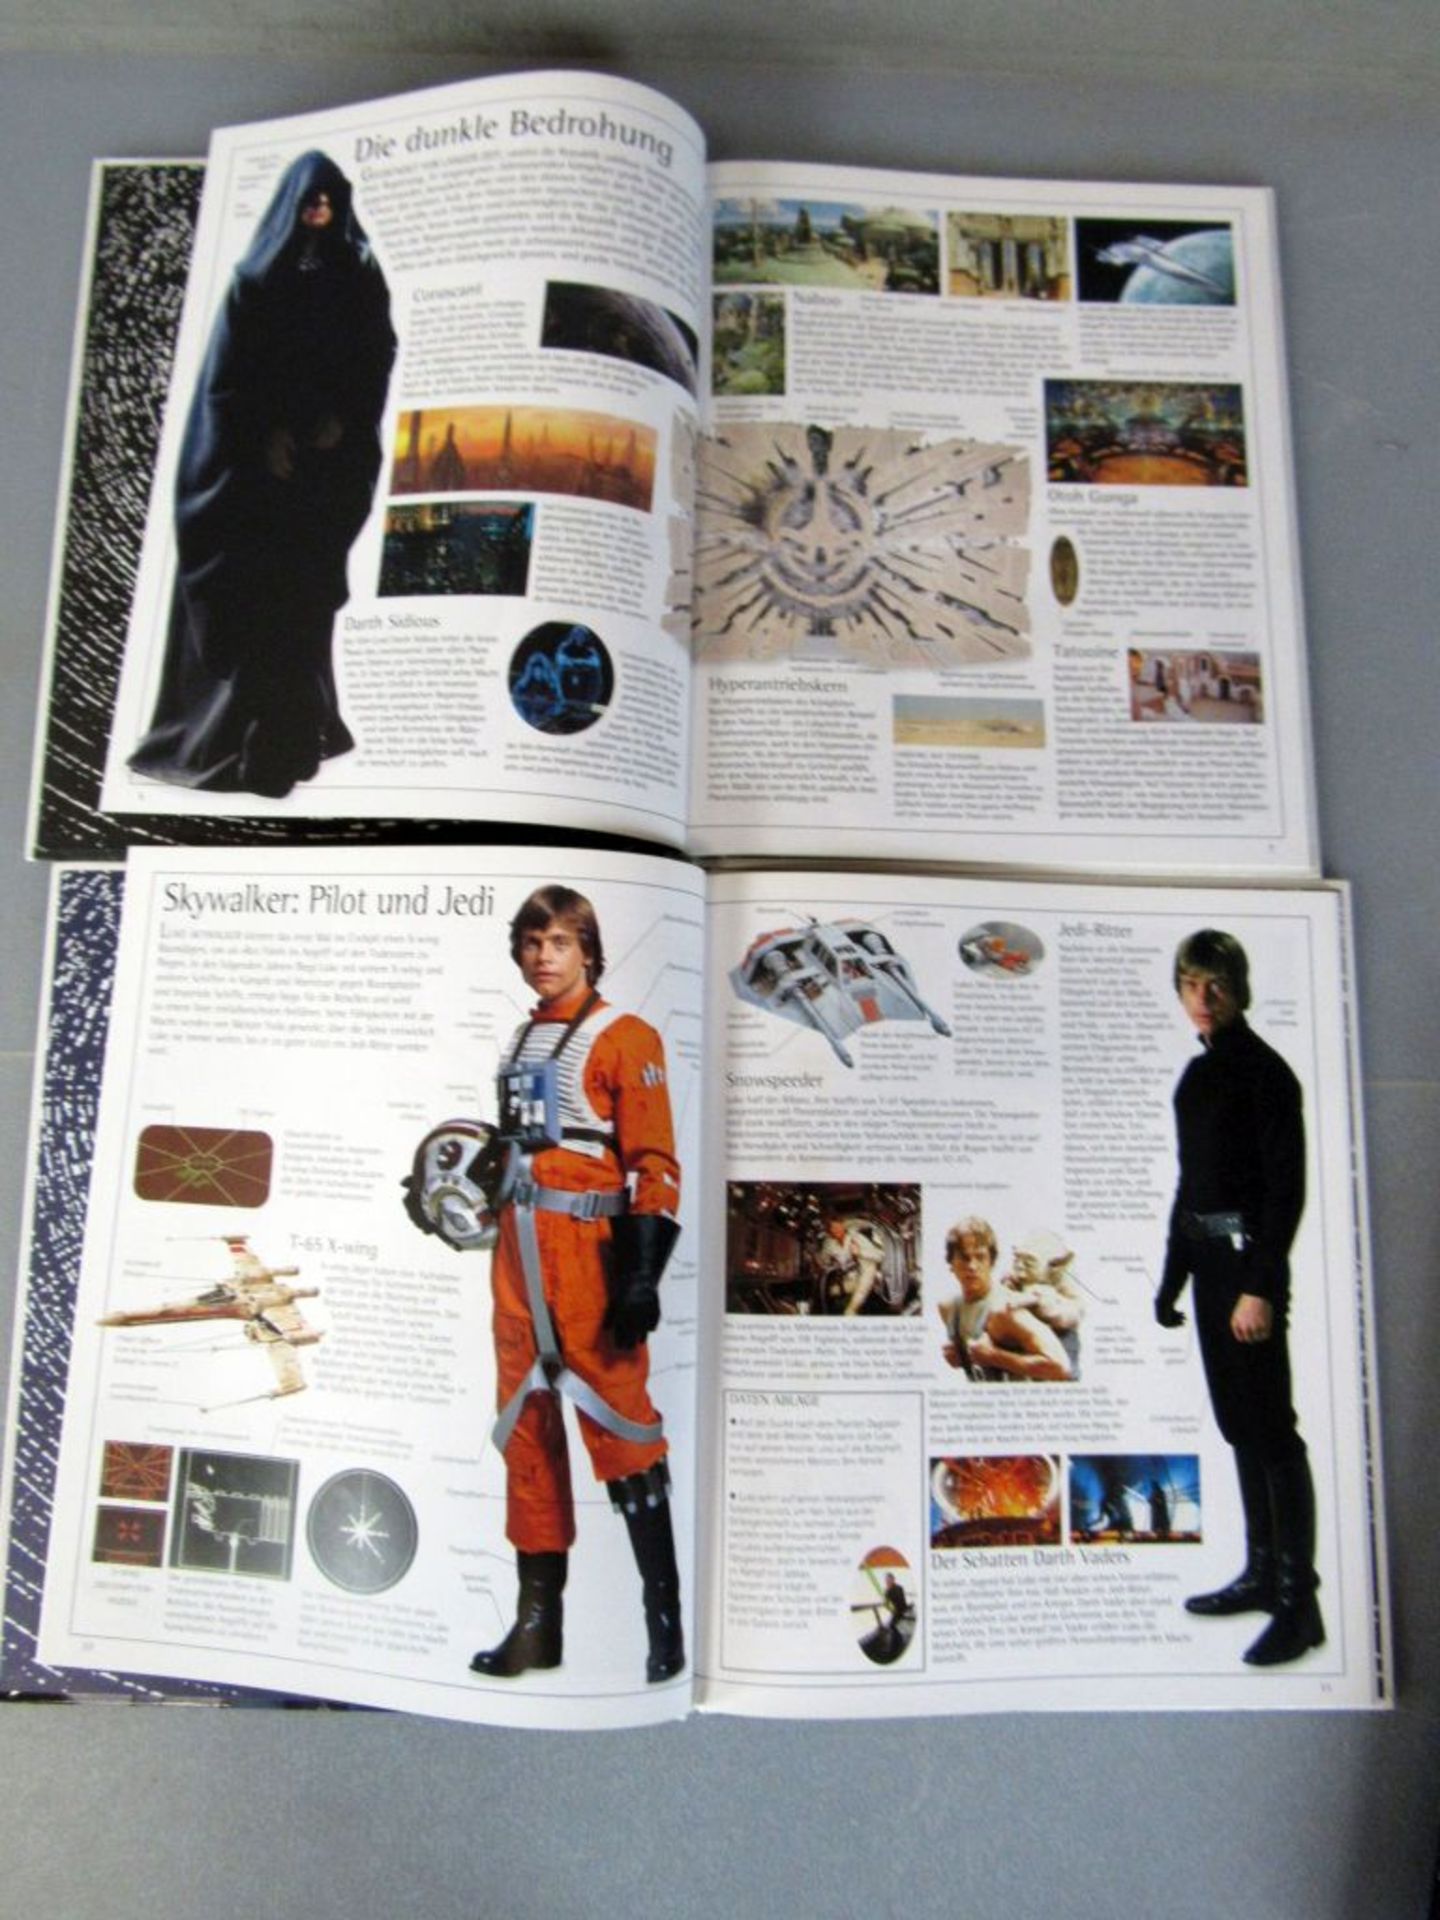 Aus umfangreicher Star Wars Sammlung 4 - Image 6 of 7